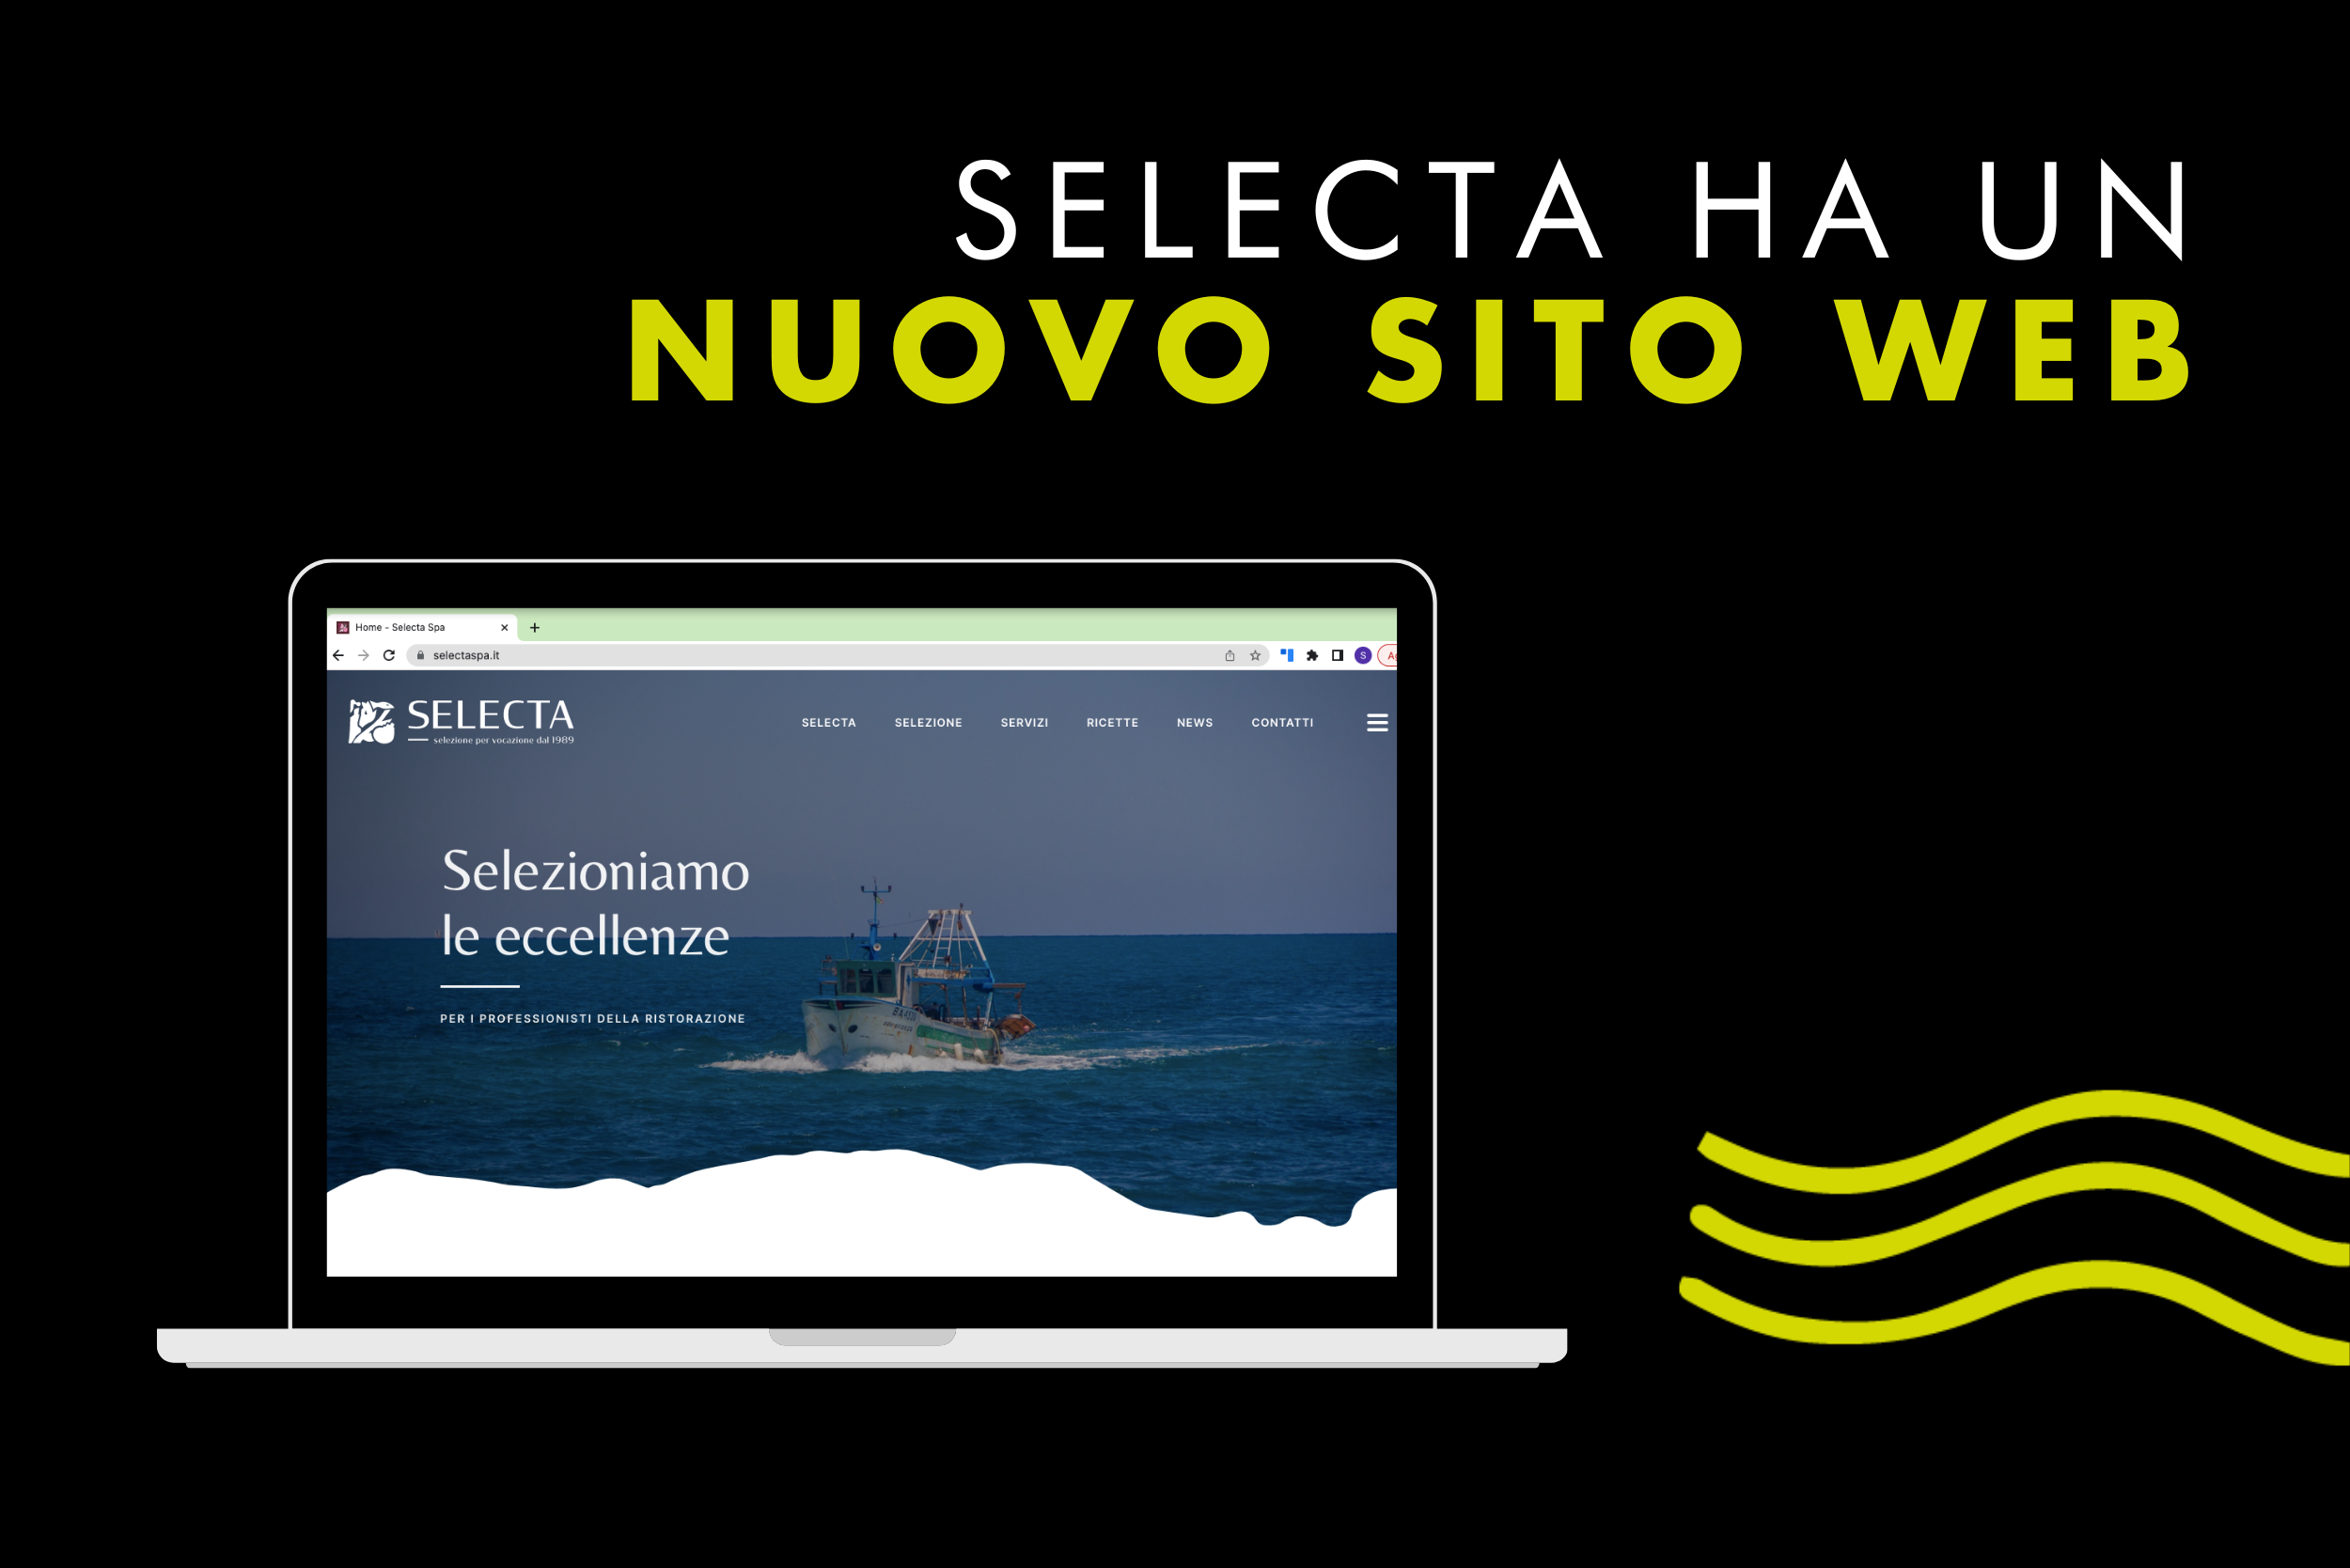 Take a look: Ecco il nuovo sito web aziendale di Selecta